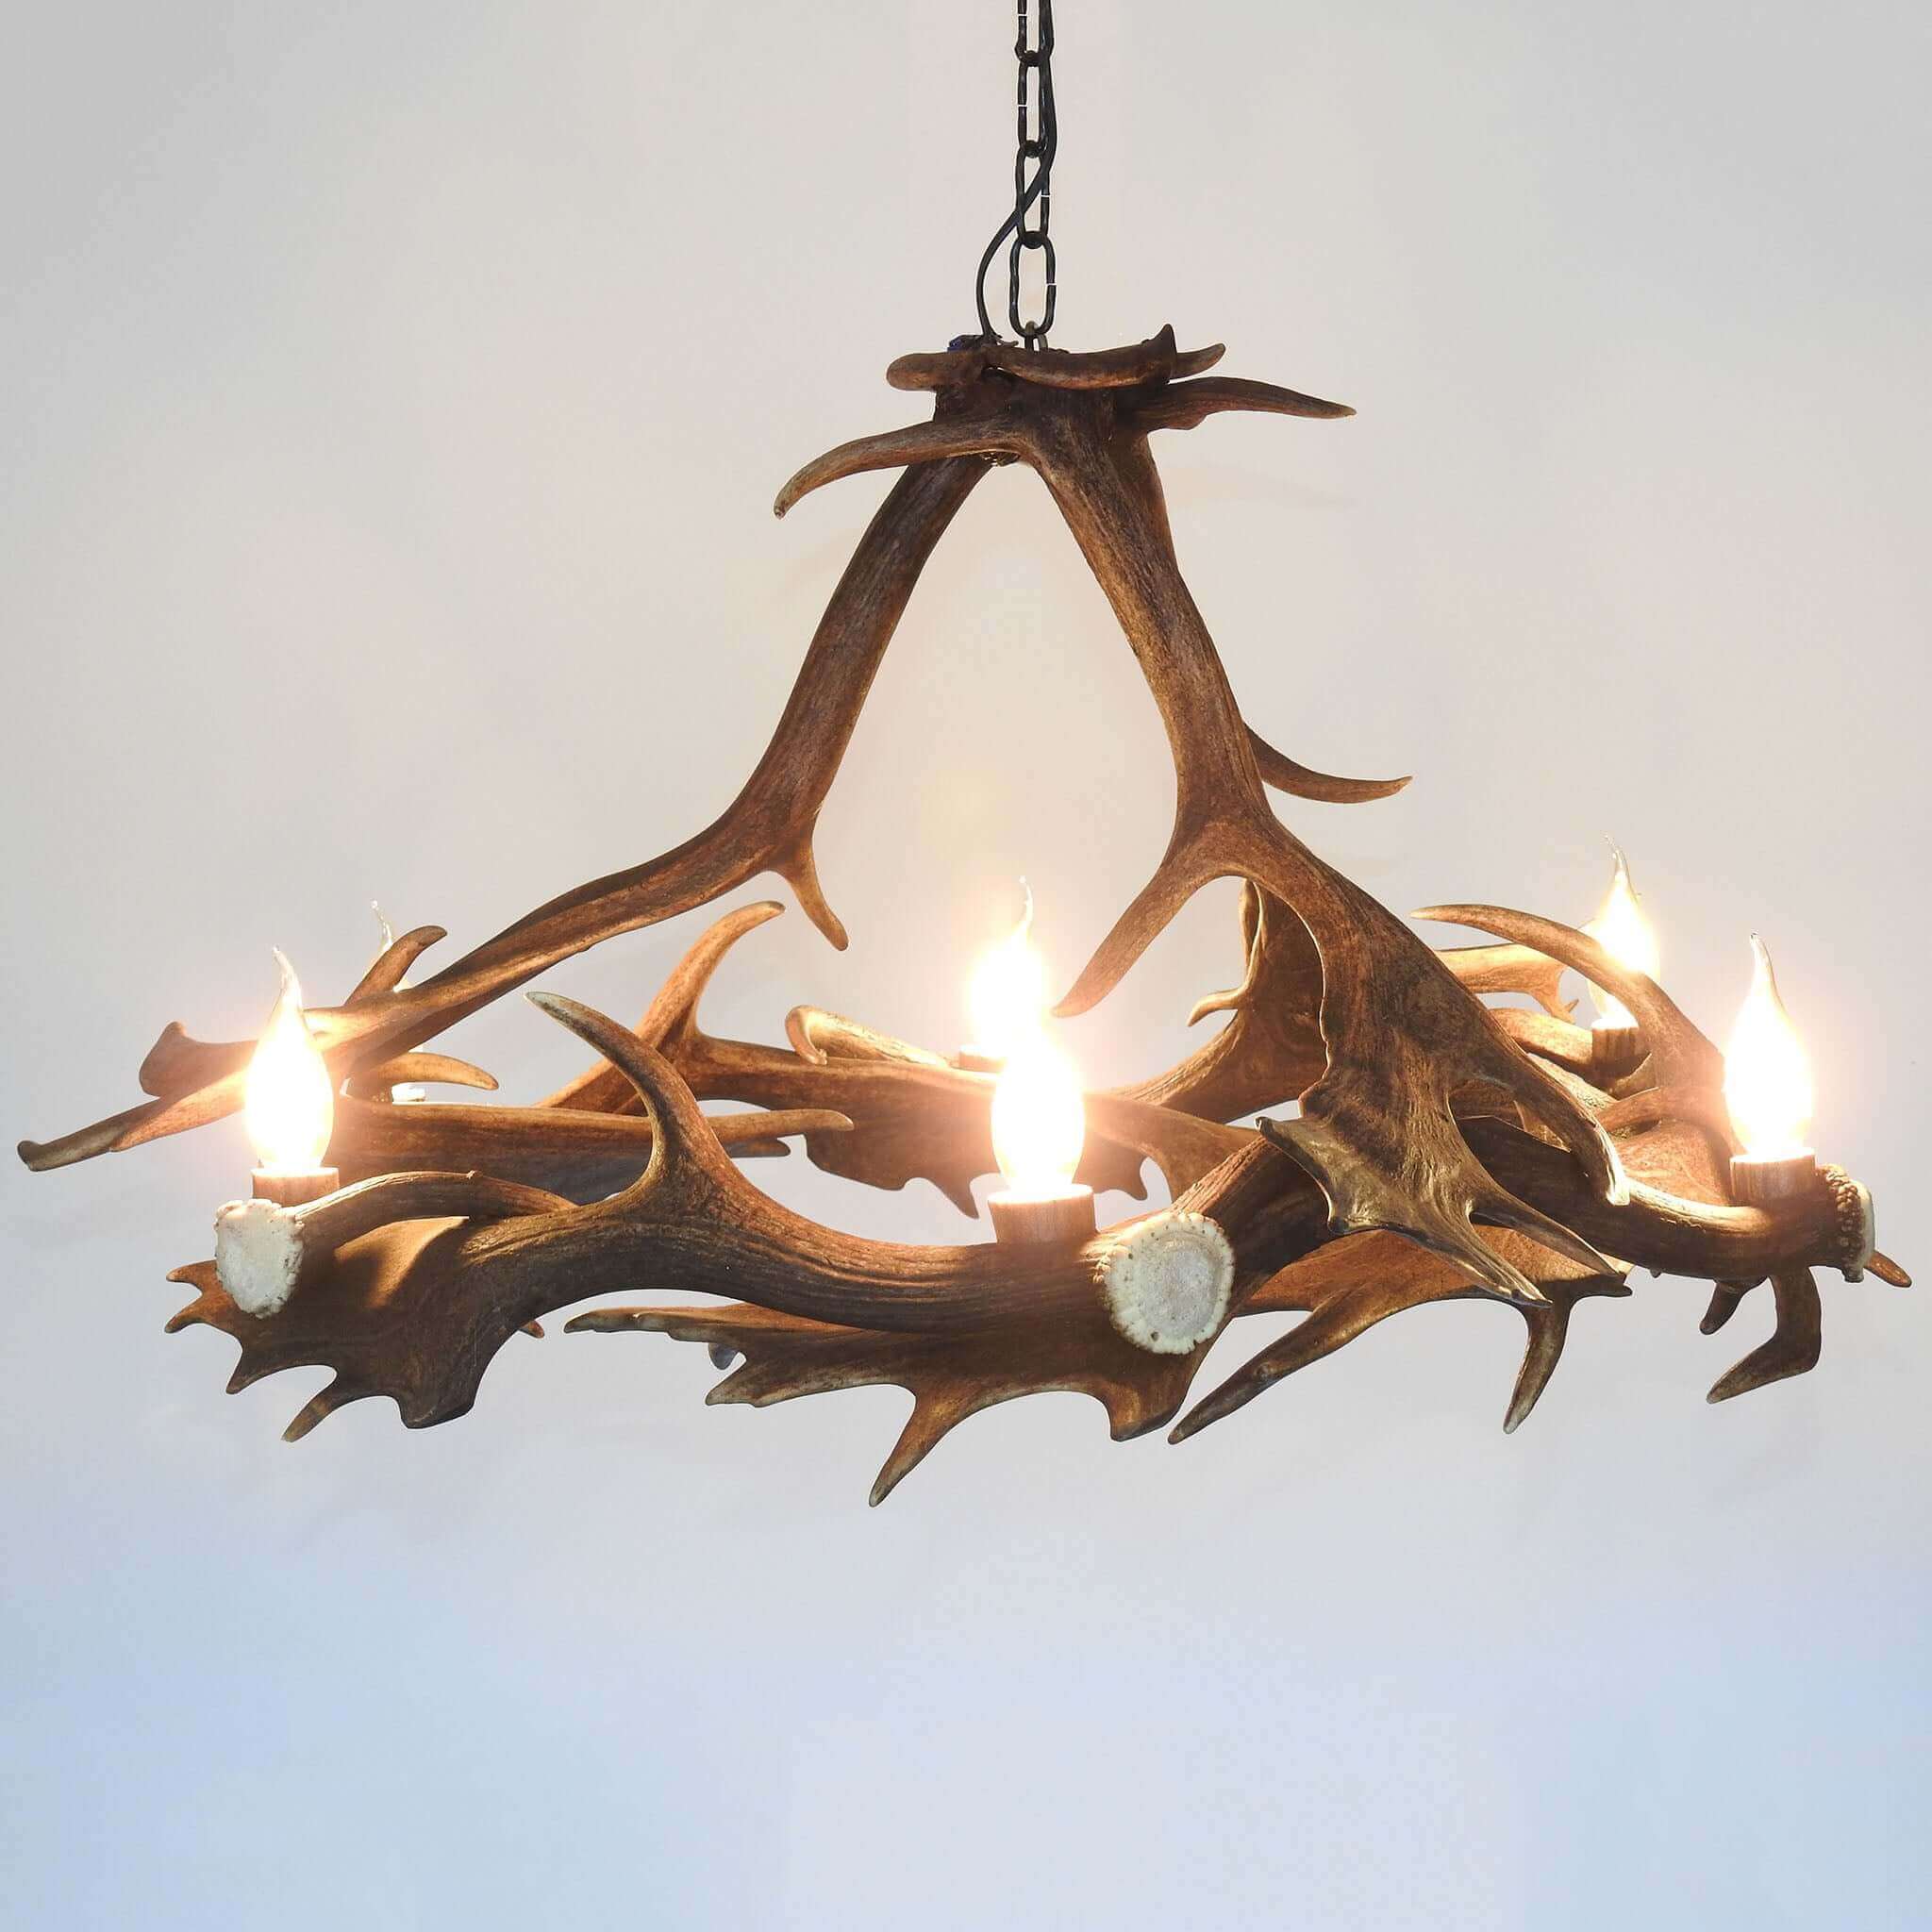 Rustic fallow deer antler chandelier.